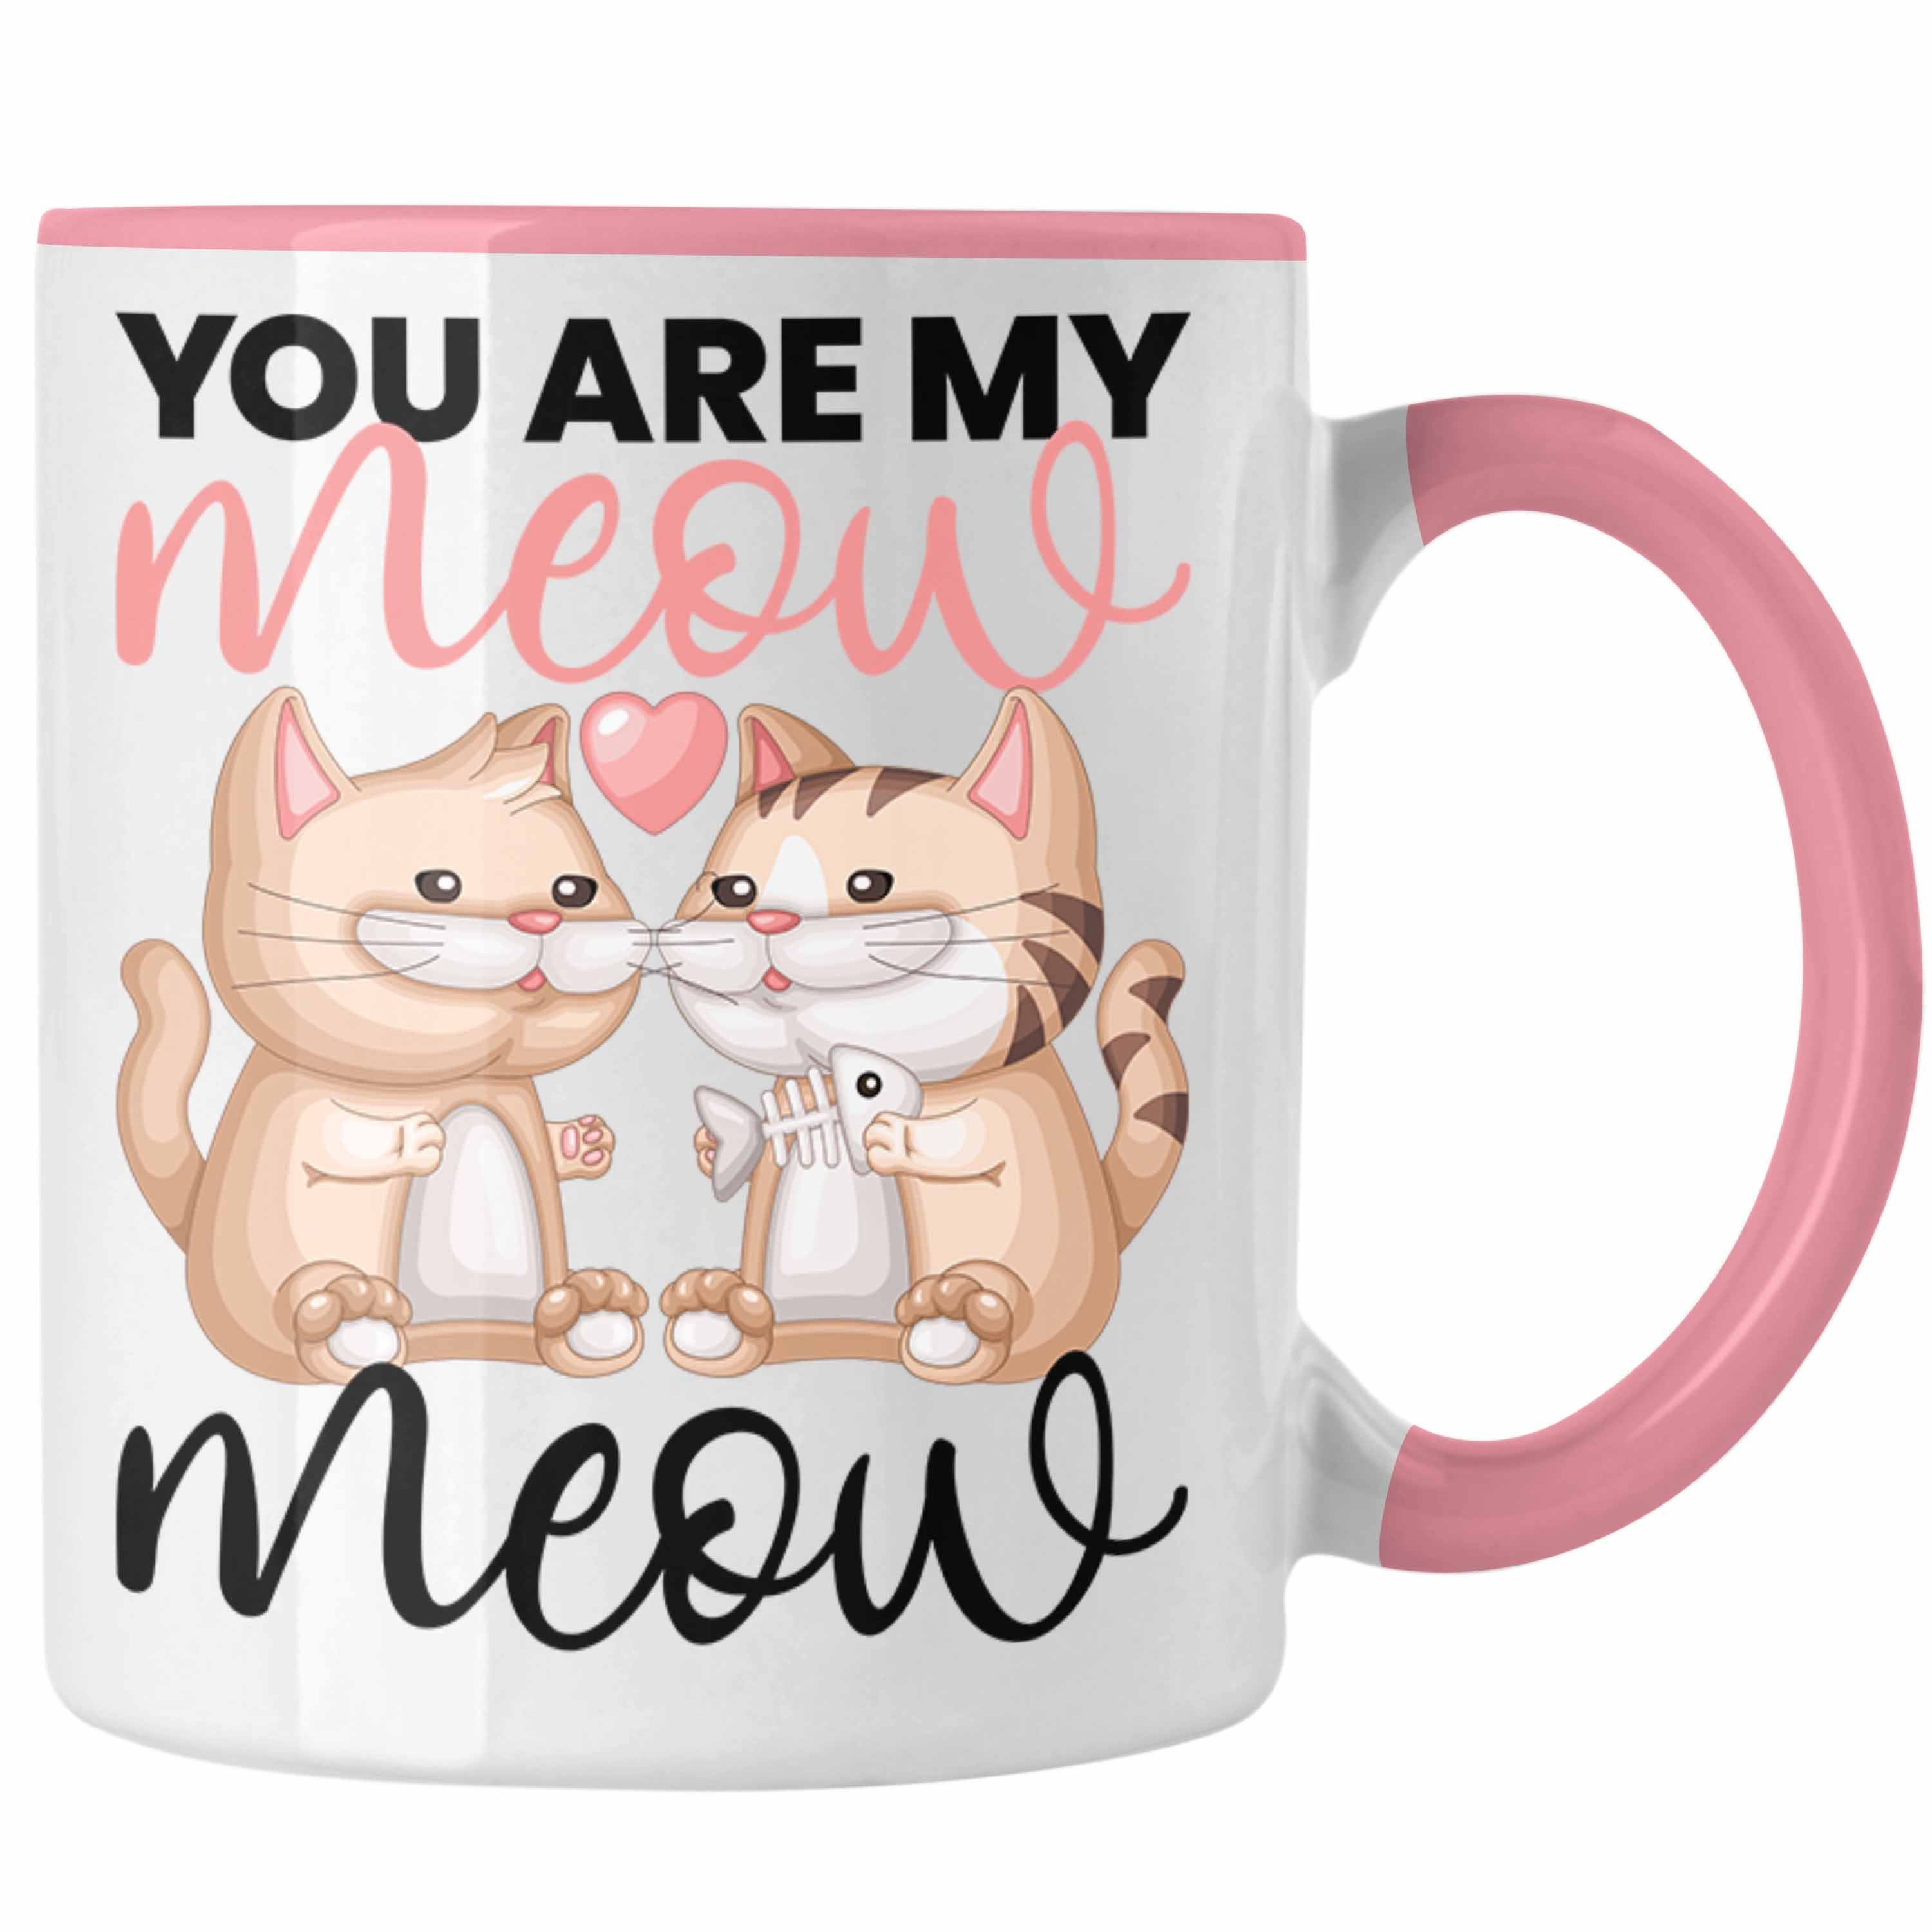 Trendation Tasse "You Are My Meow Meow" Tasse für Katzenliebhaber Geschenk zum Valentin Rosa